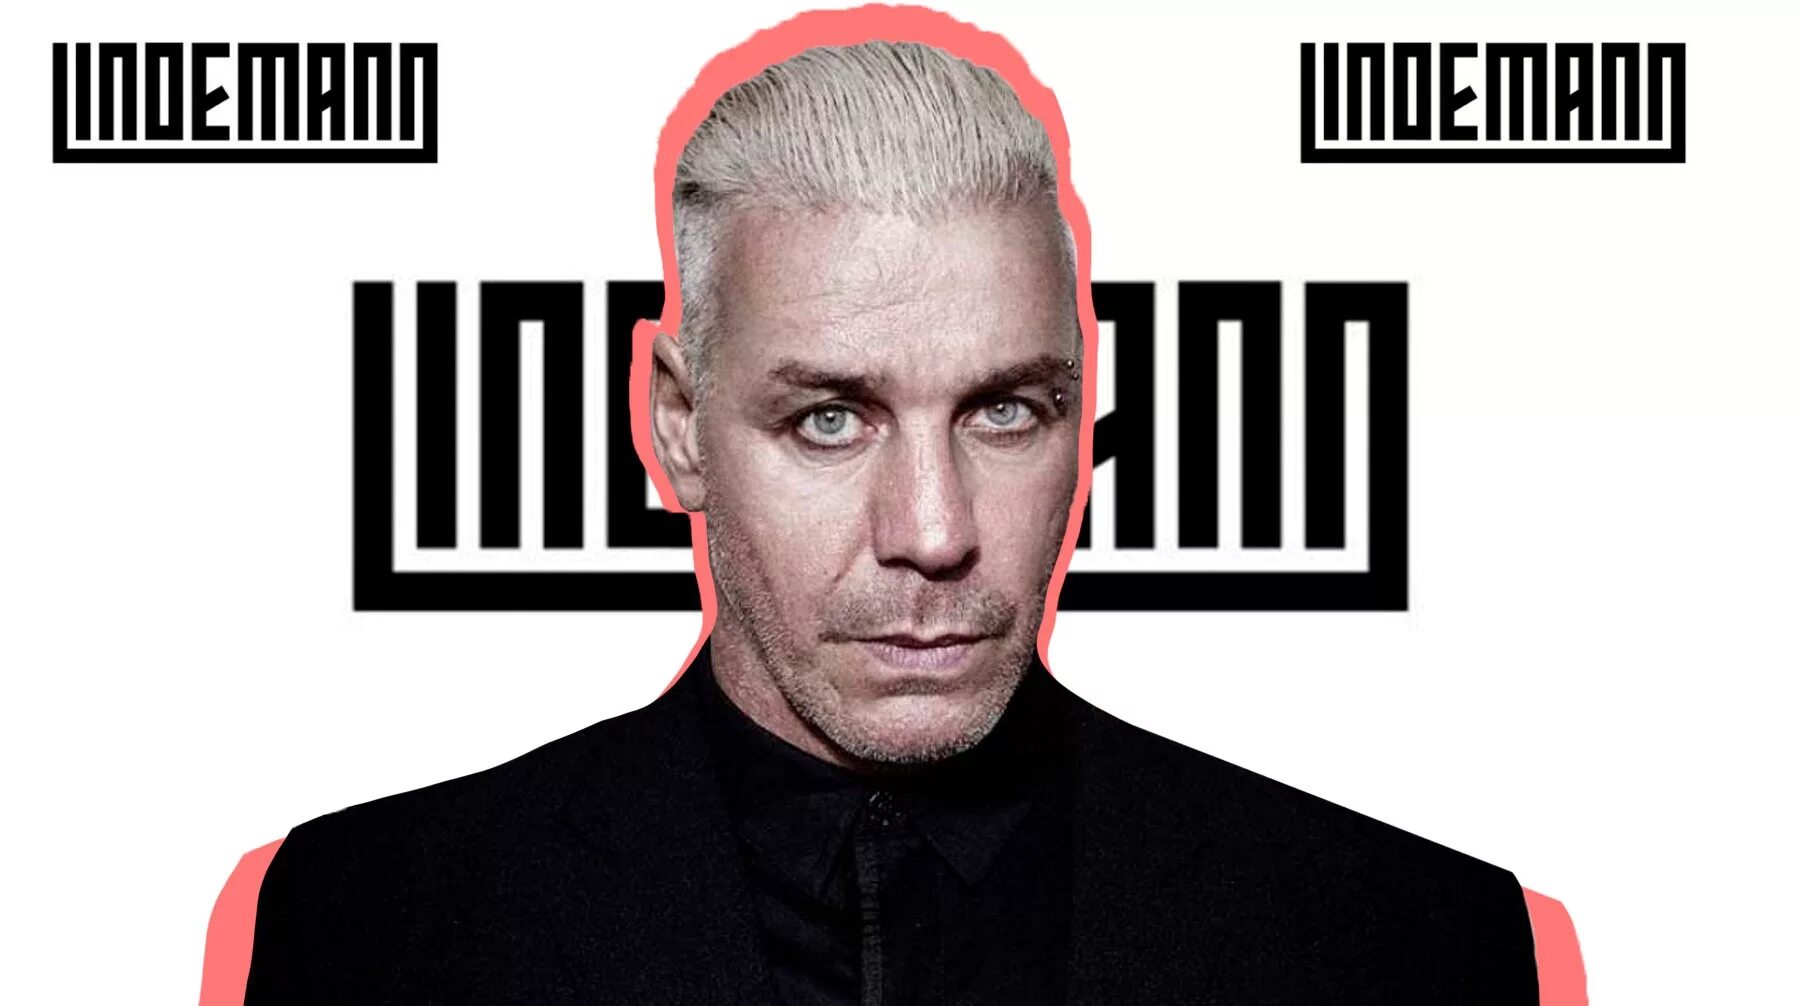 Lindemann sport перевод. Till Lindemann обложка. Till Lindemann 2021. Тилль Линдеманн обложка.